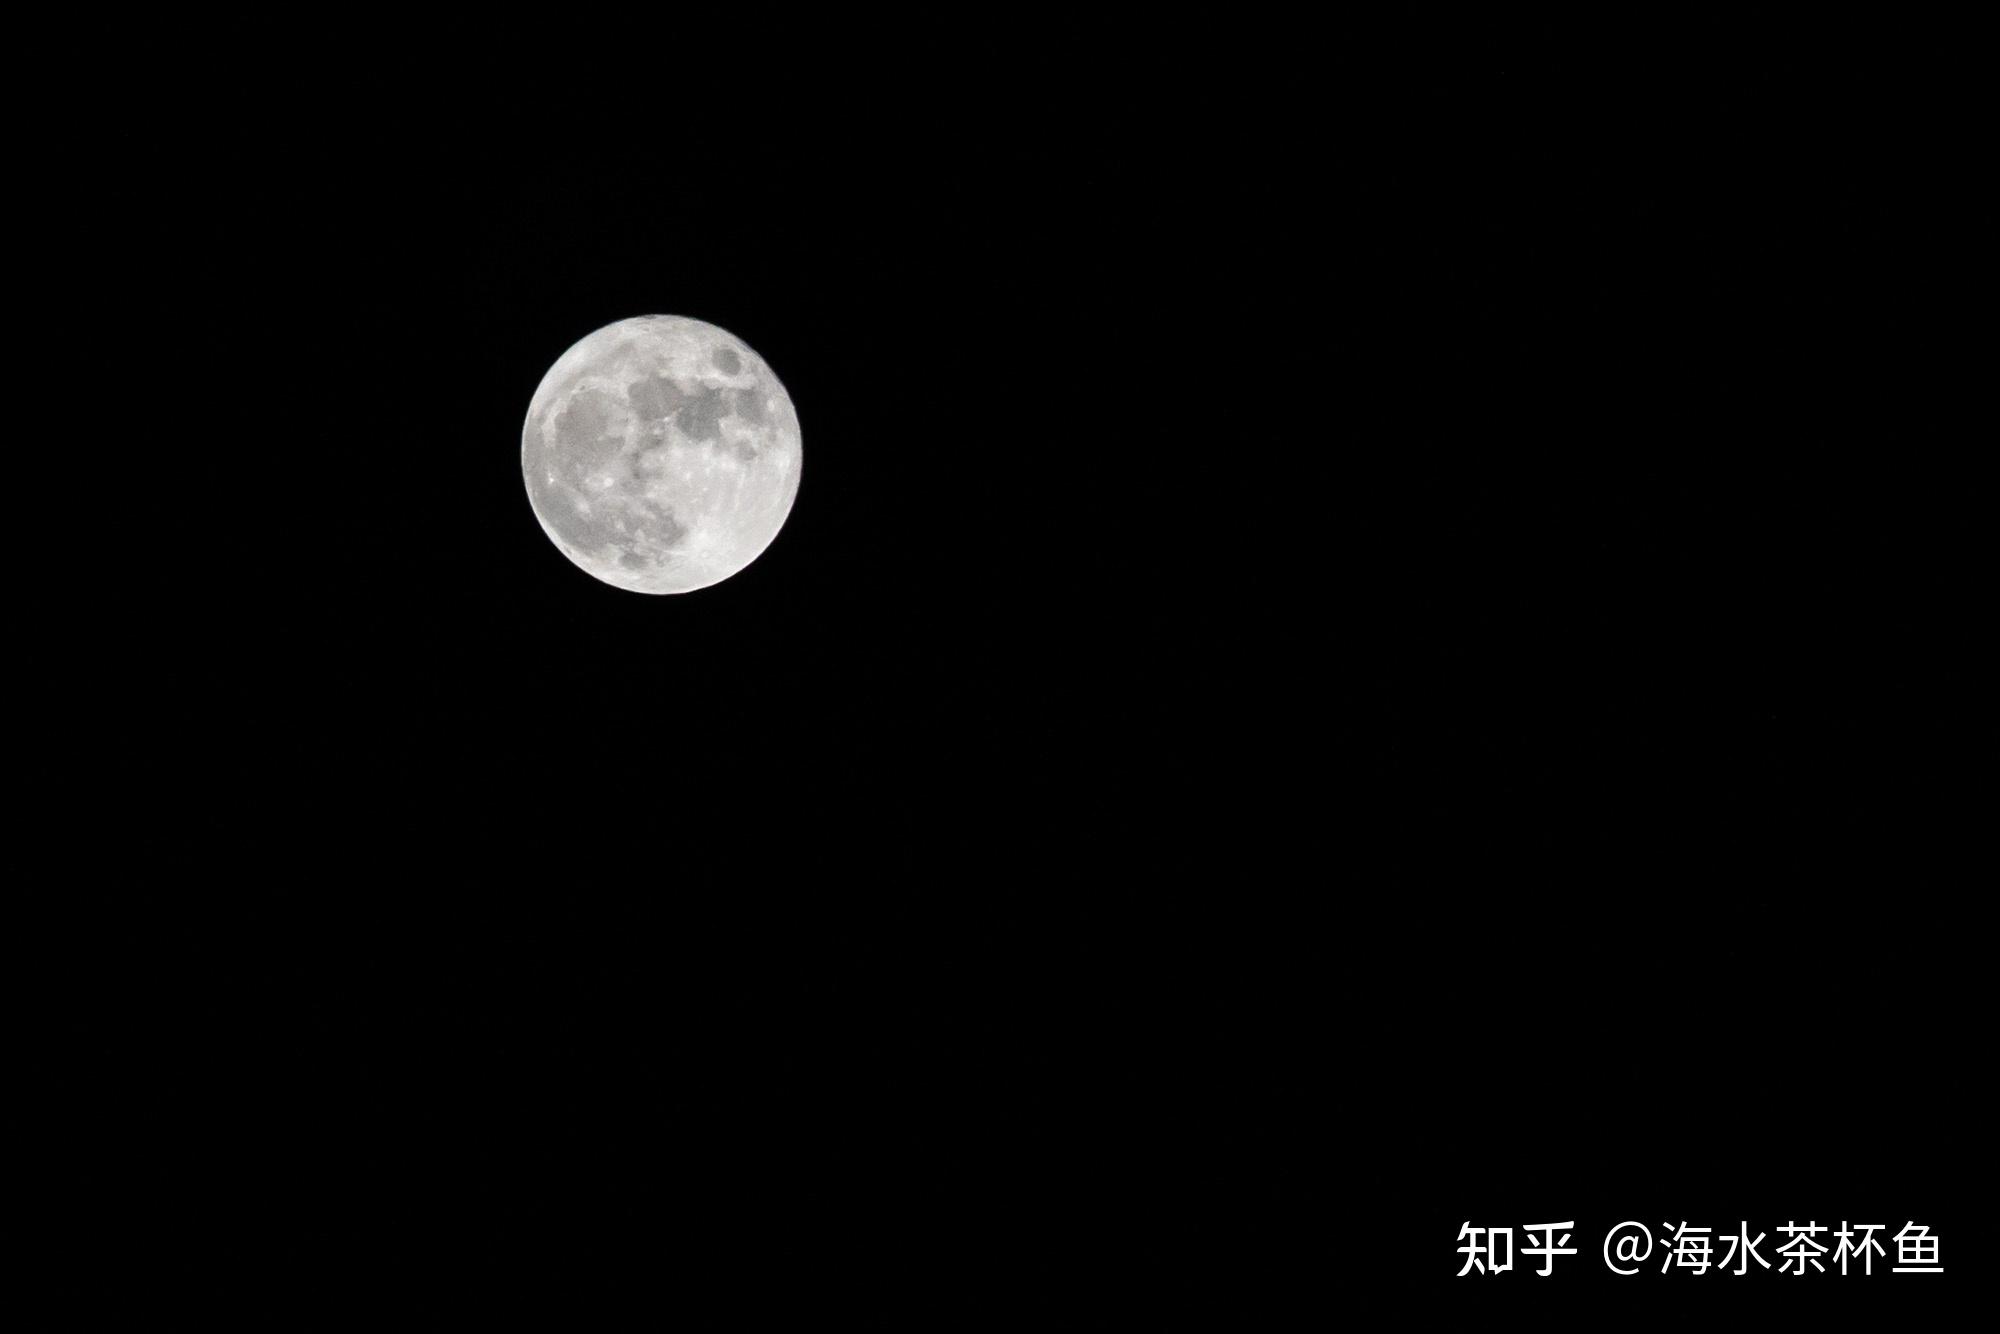 2021 年中秋节你在哪里赏月?你拍到的月亮是什么样子的?